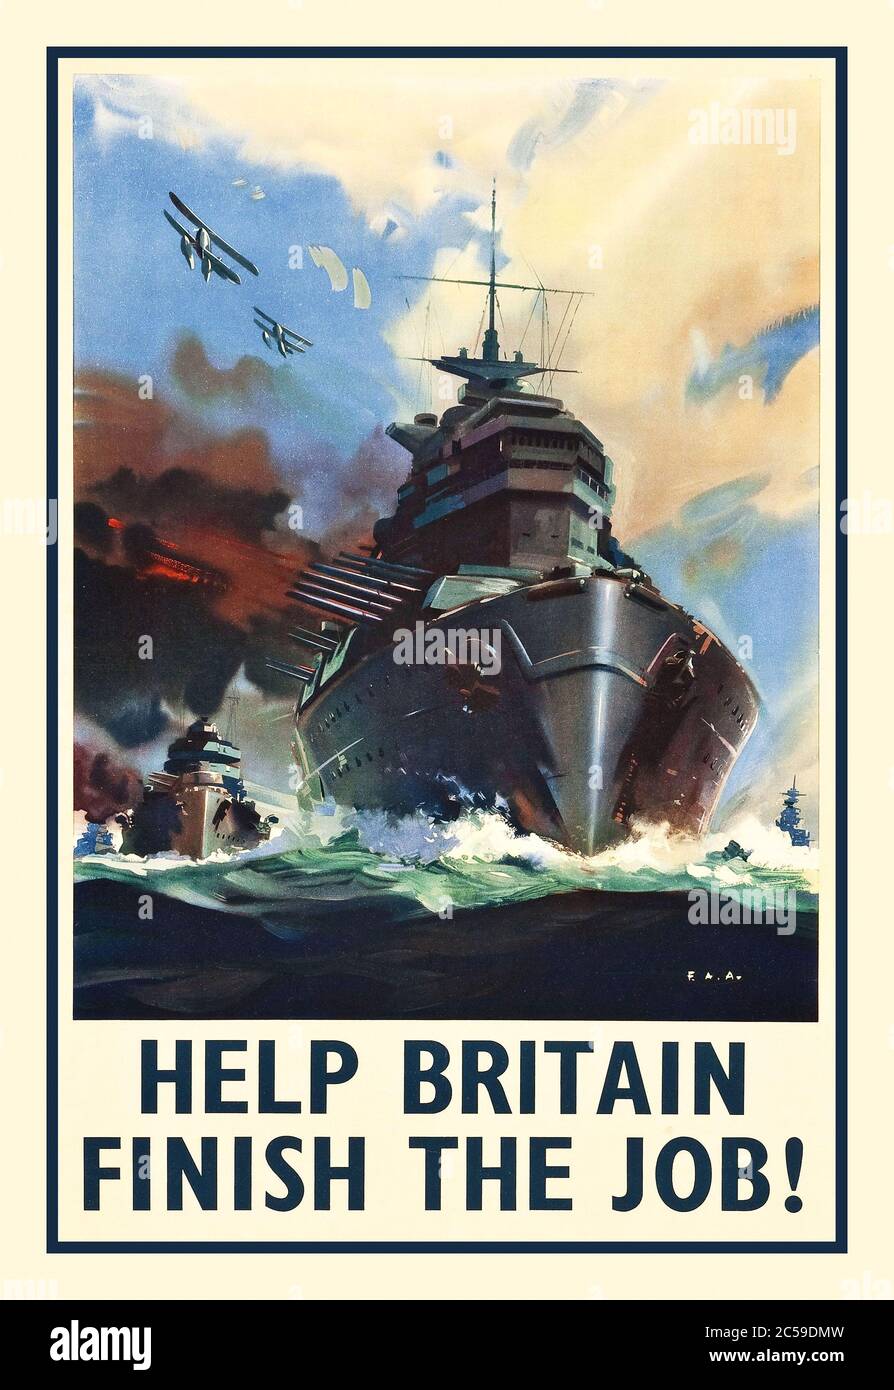 Recrutement de propagande pendant la Seconde Guerre mondiale (années 1940). Affiche de la marine britannique « Help Britain Finish the Job ». Les navires de guerre font partie des mers tandis que l'avion d'escorte est au-dessus de cette affiche de la Seconde Guerre mondiale, destinée à inspirer les recrues potentielles à rejoindre le combat et à « aider la Grande-Bretagne à finir la guerre ». Banque D'Images